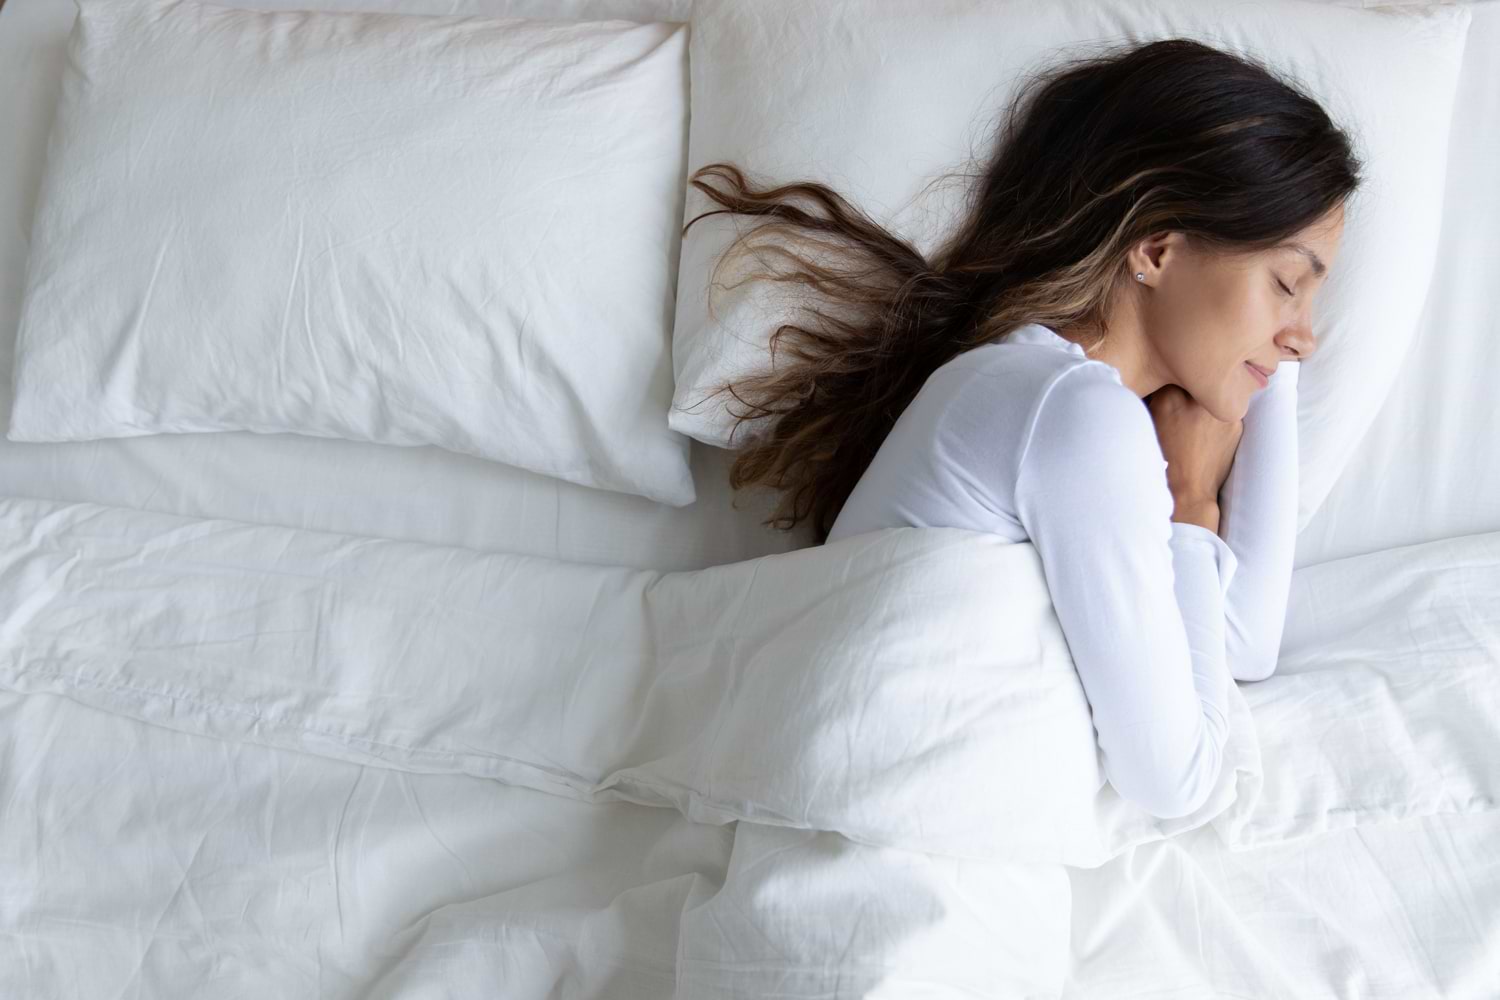 Comment-bien-dormir-5-regles-a-suivre-pour-une-chambre-à-coucher-qui-favorise-le-sommeil